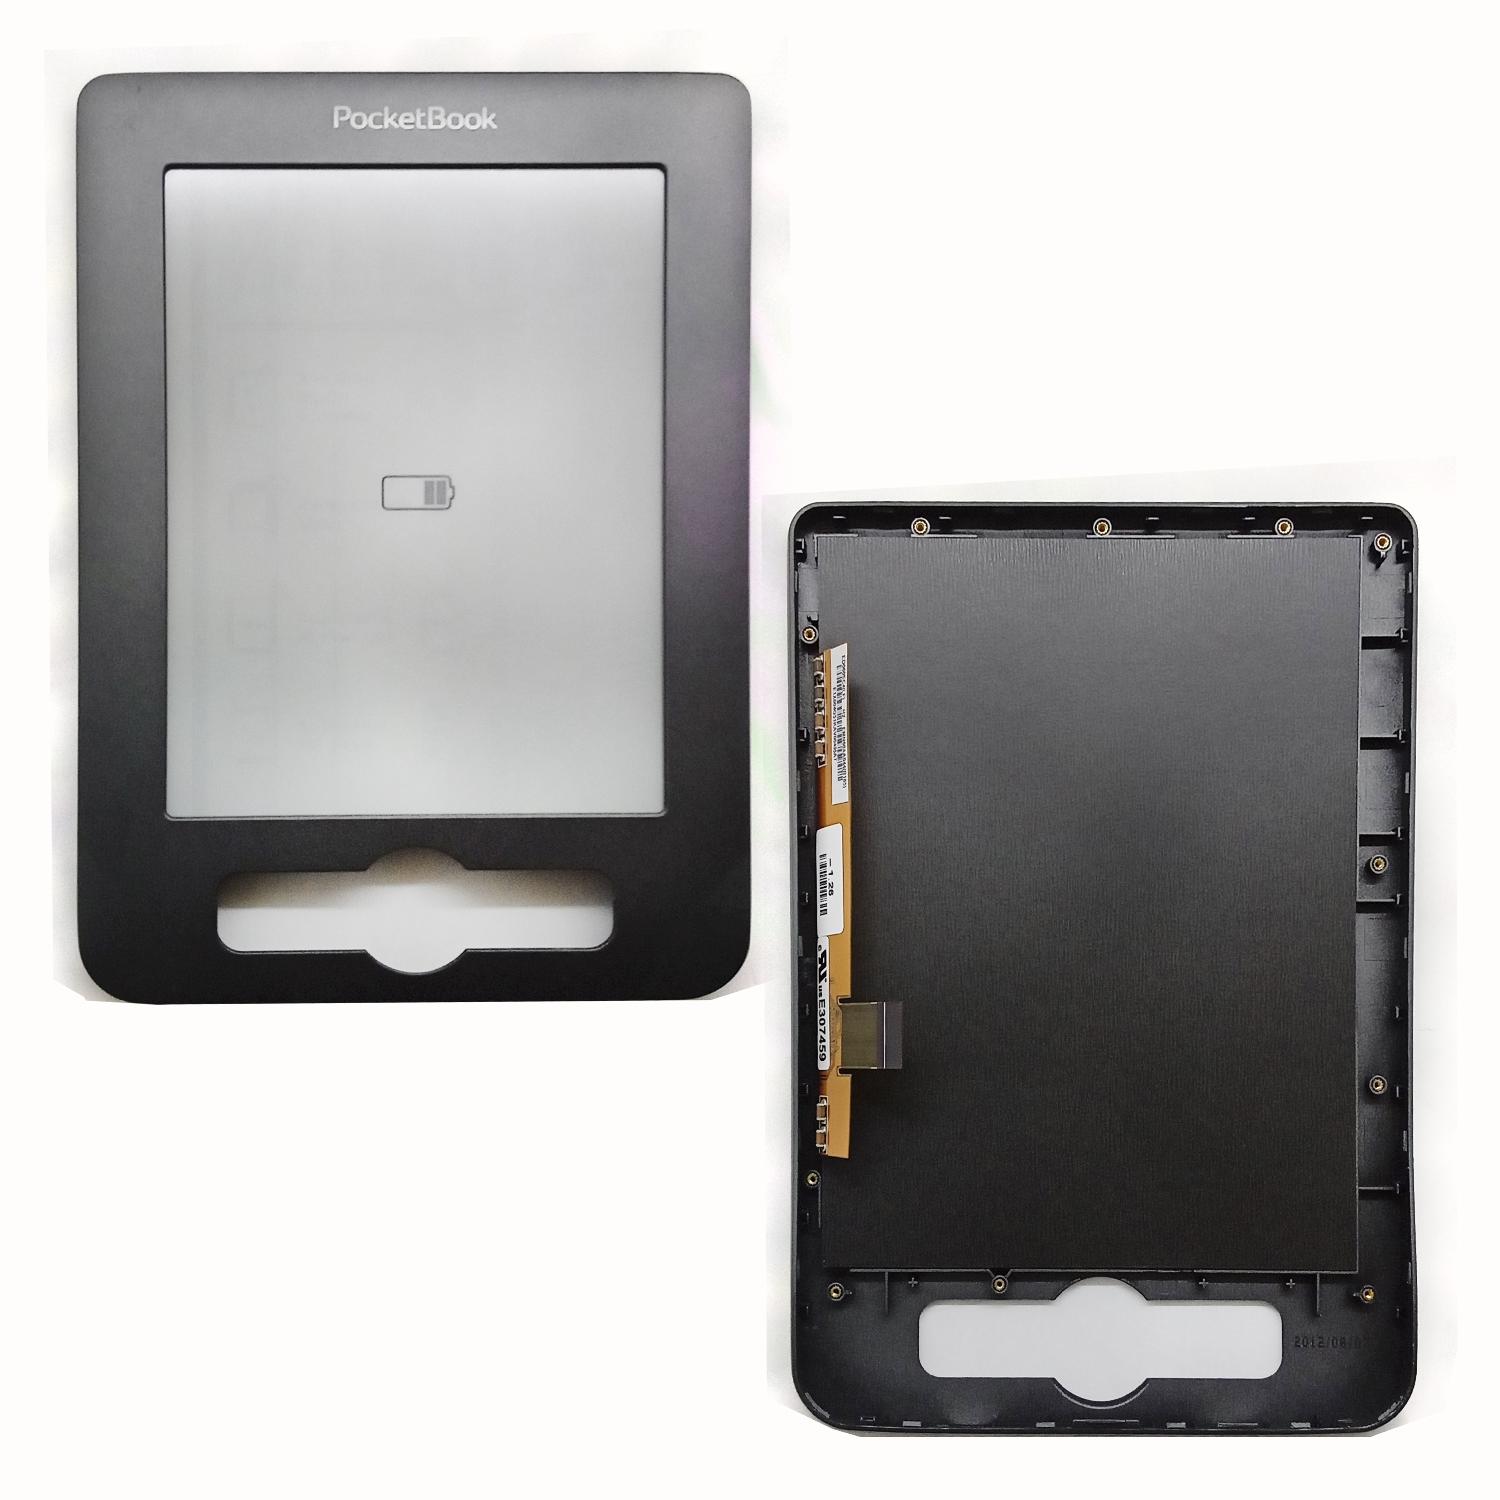 Дисплей электронной книги 6" E307459 PocketBook б/у